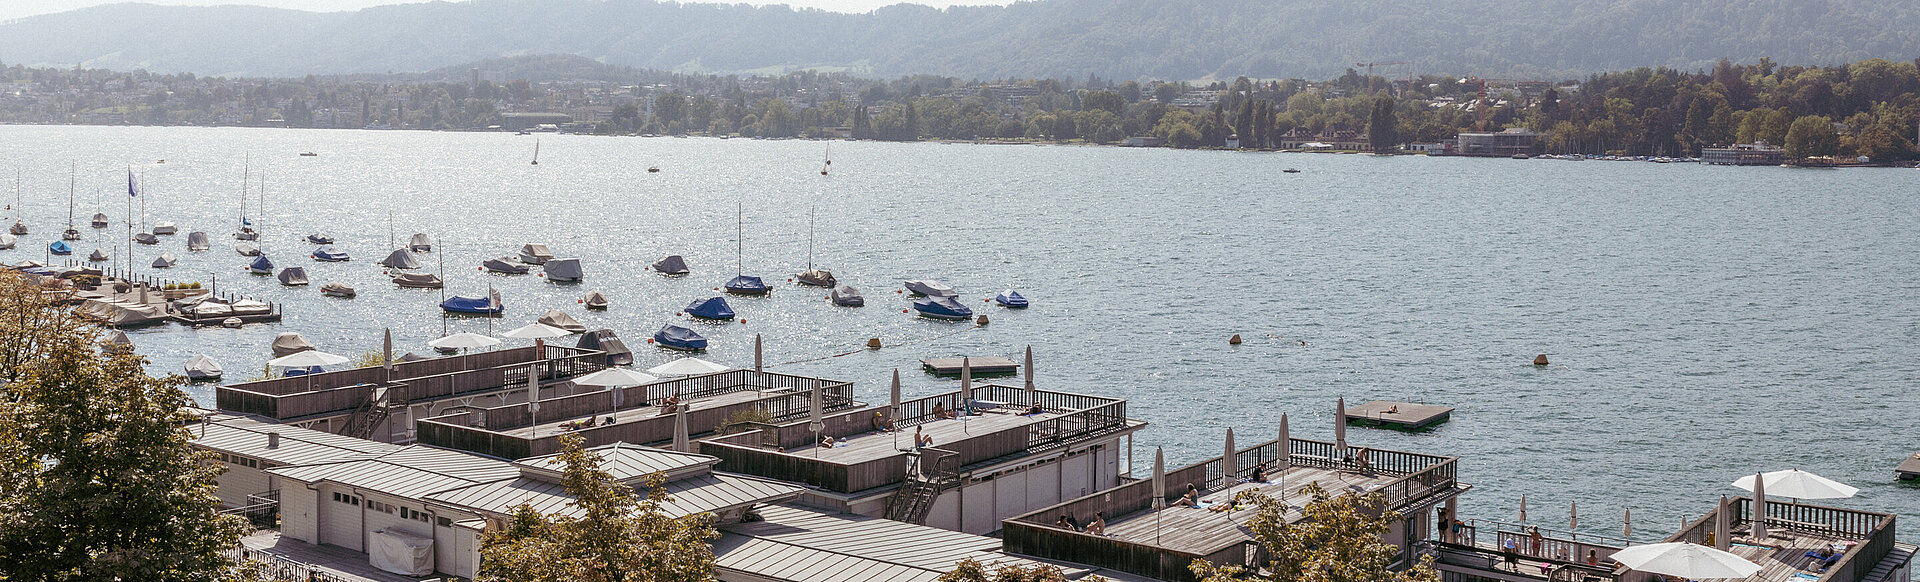 AMERON Zürich Bellerive au Lac Hotel Seeblick mit Schiffen